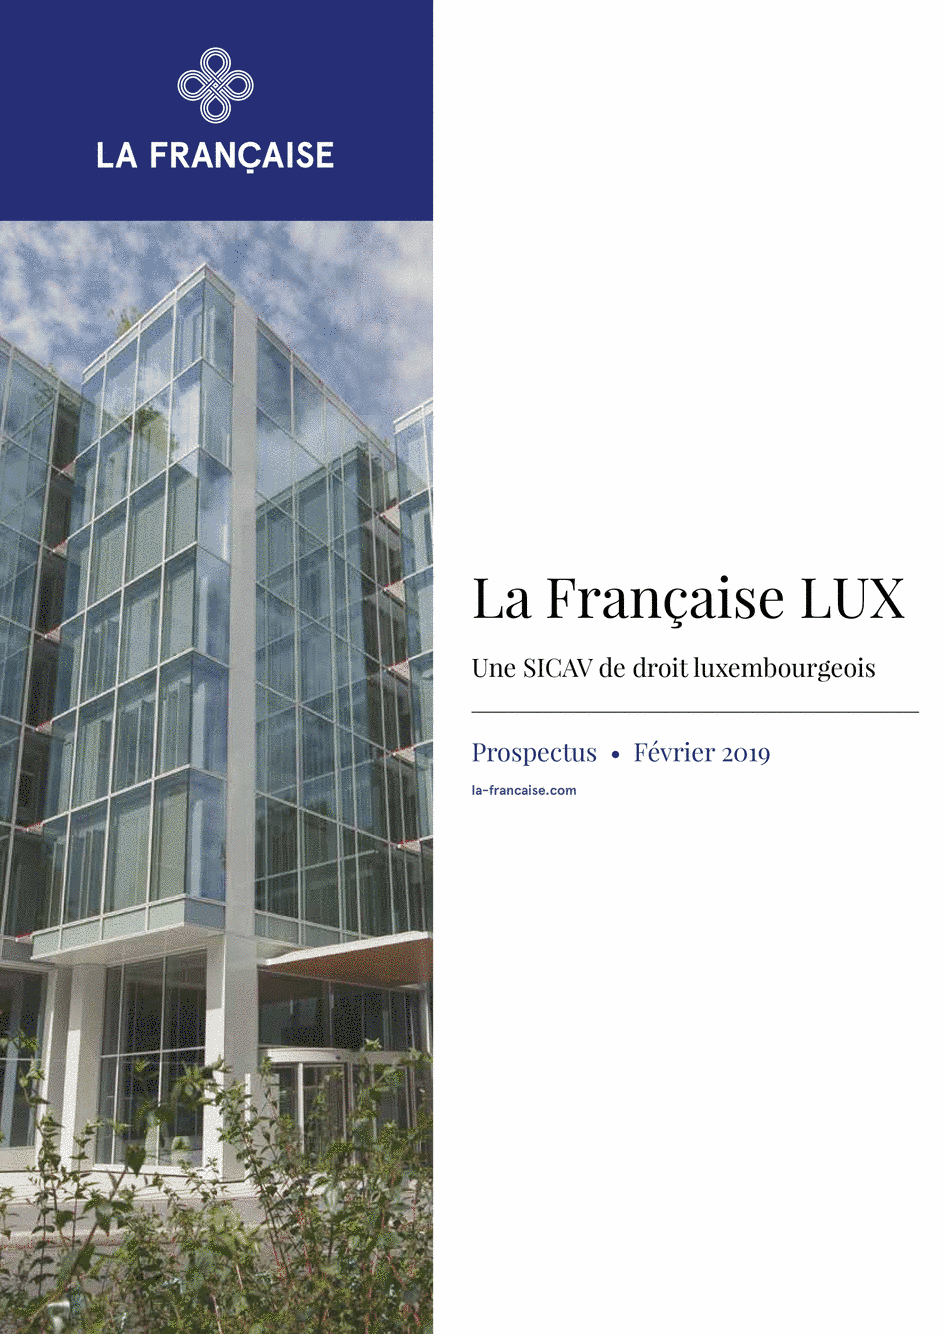 Prospectus La Française LUX - Forum Global Real Estate Securities - R (D) EUR - 01/12/2018 - Français